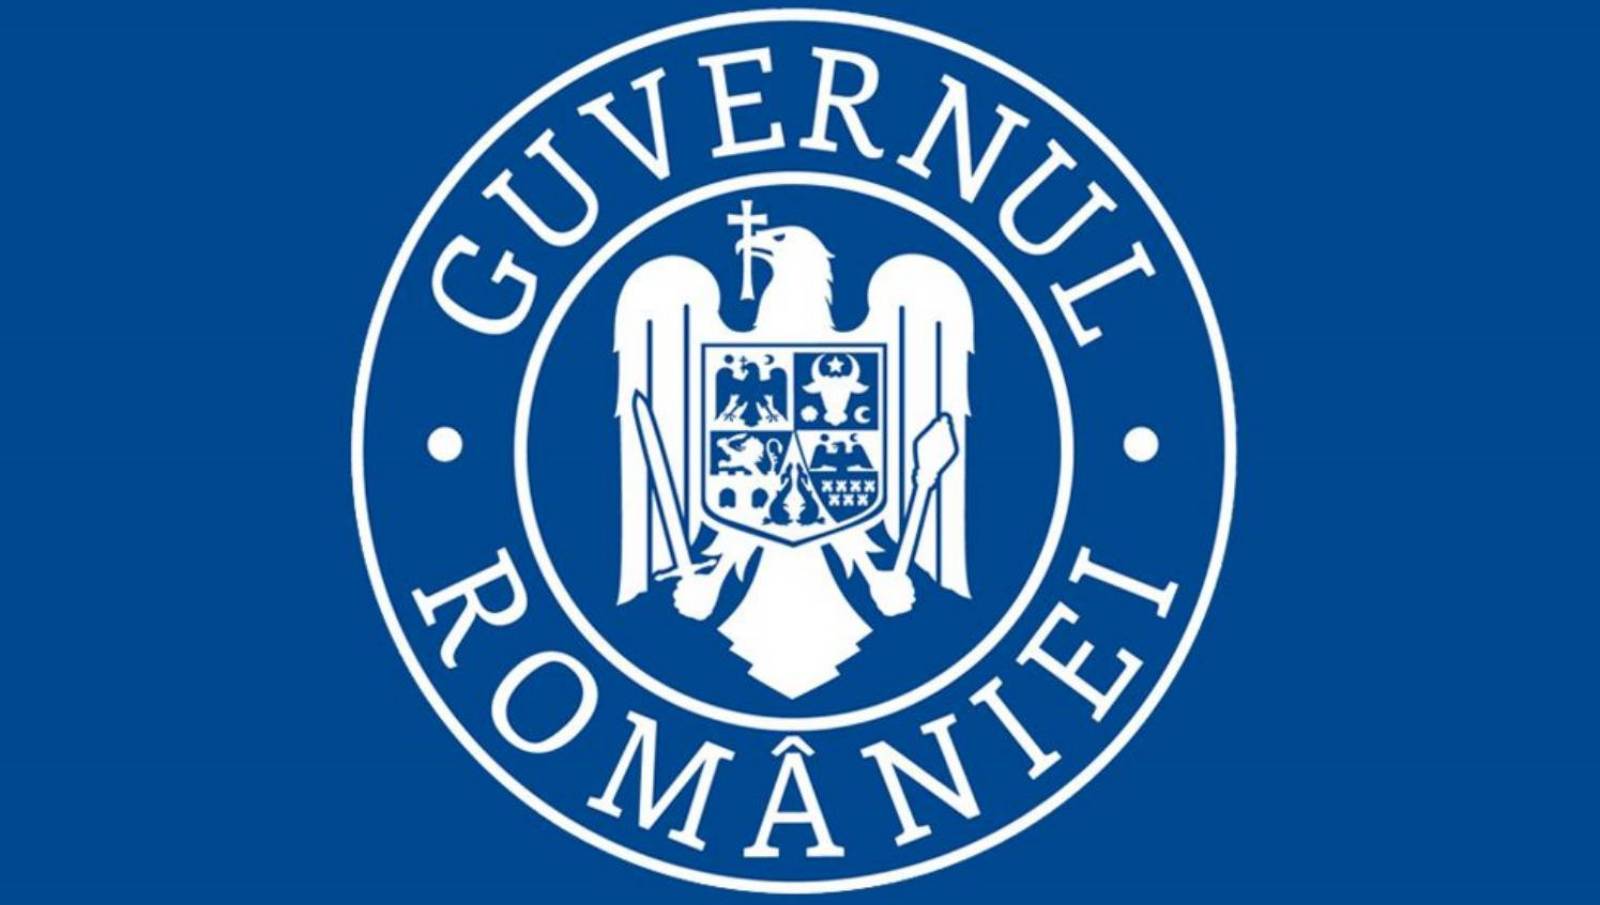 De Roemeense regering is emotioneel